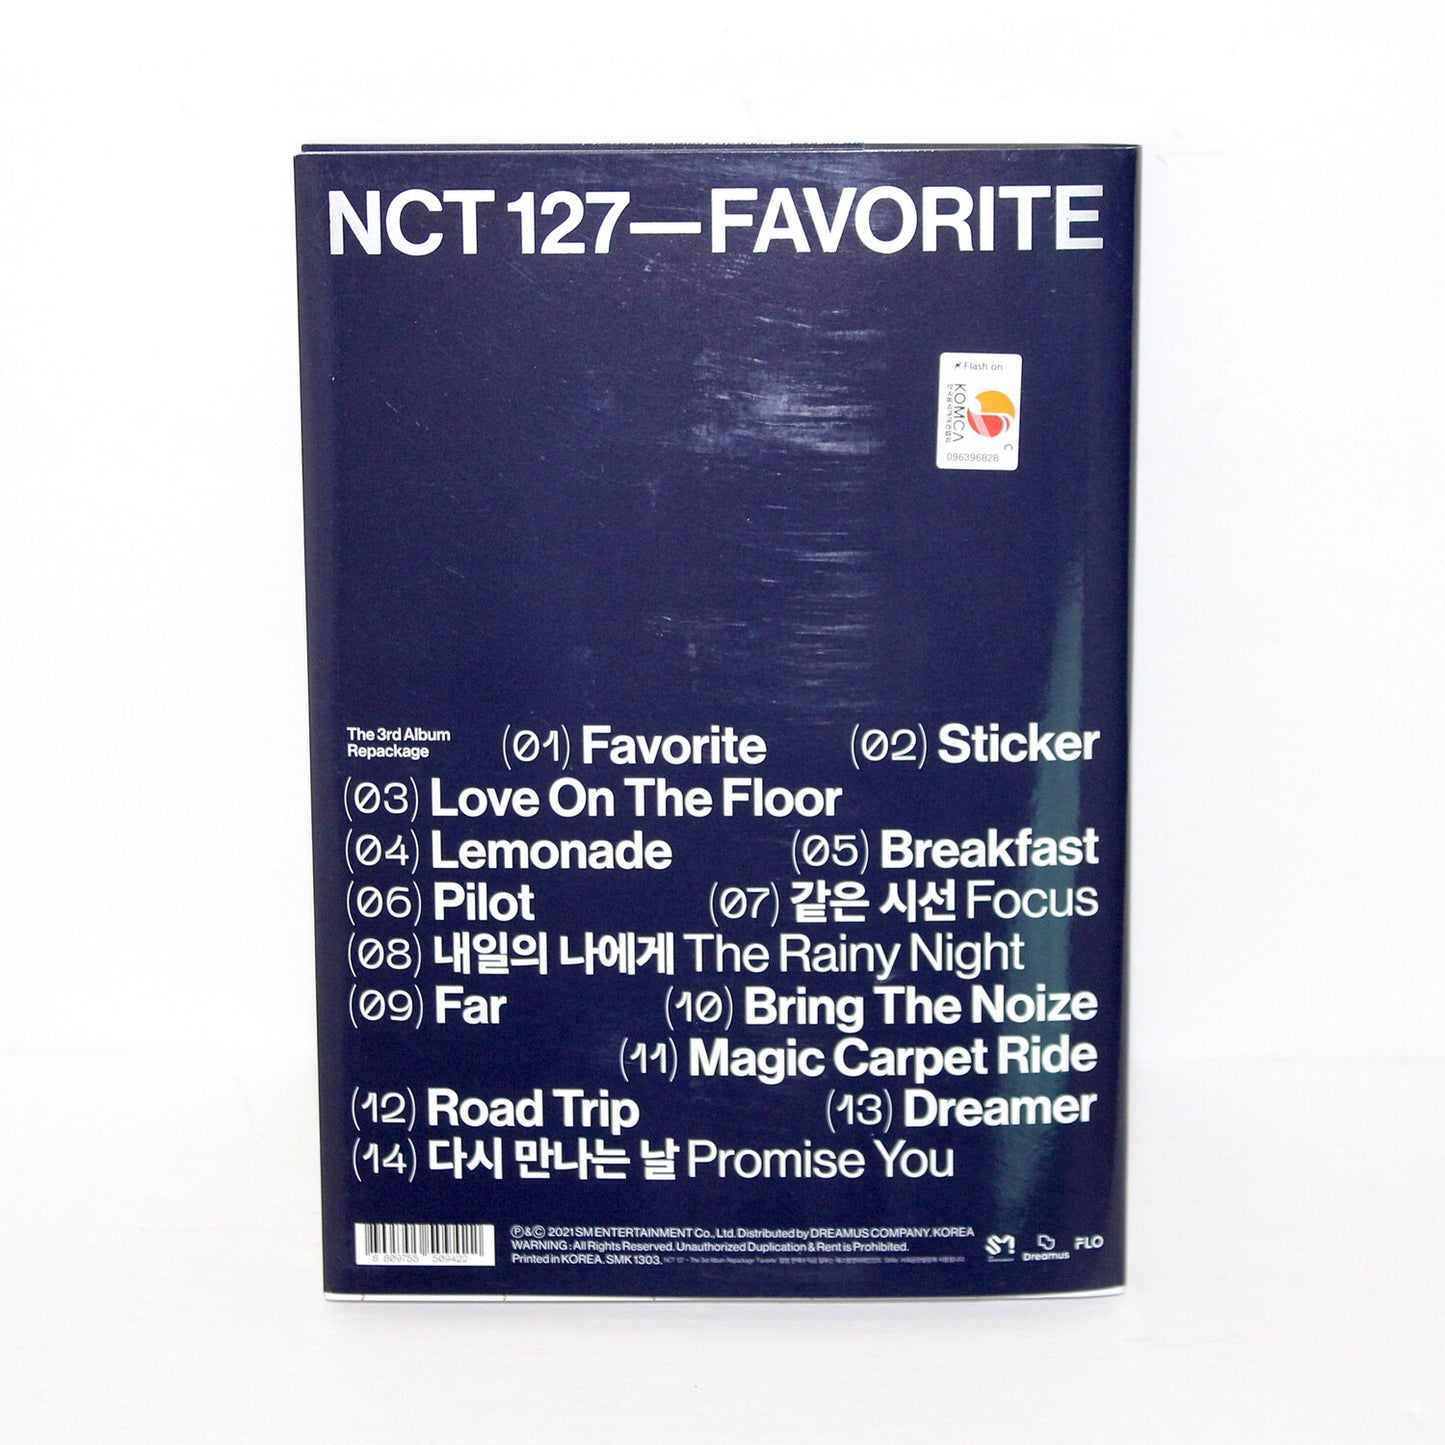 Reempaquetado del tercer álbum de NCT 127: Favorito | Versión clásica.